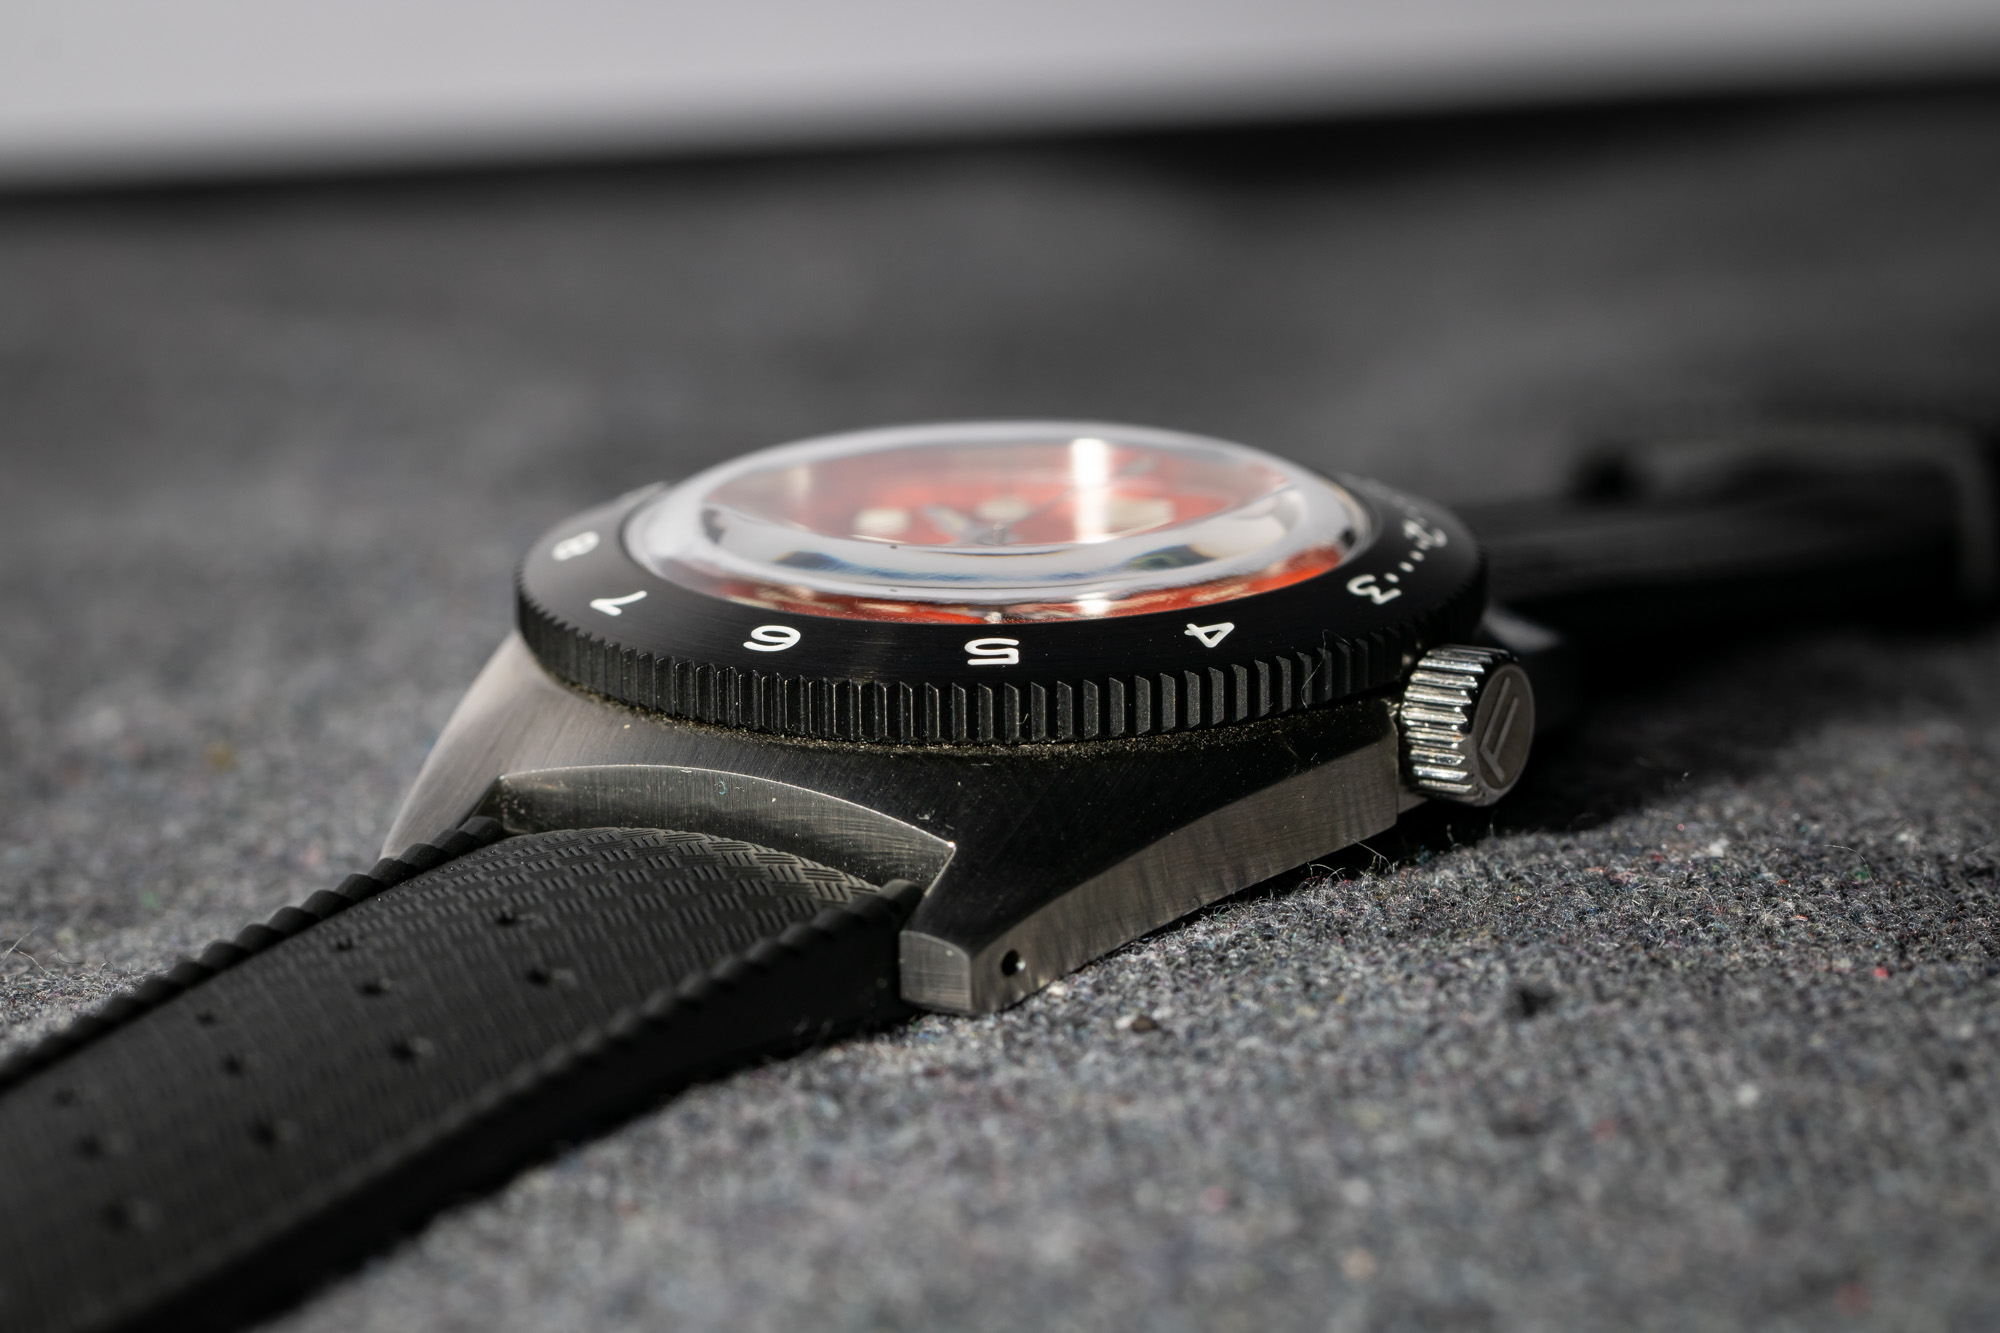 Обзор мужских наручных часов: Foster Watch Company 11 Atmos Skin Diver